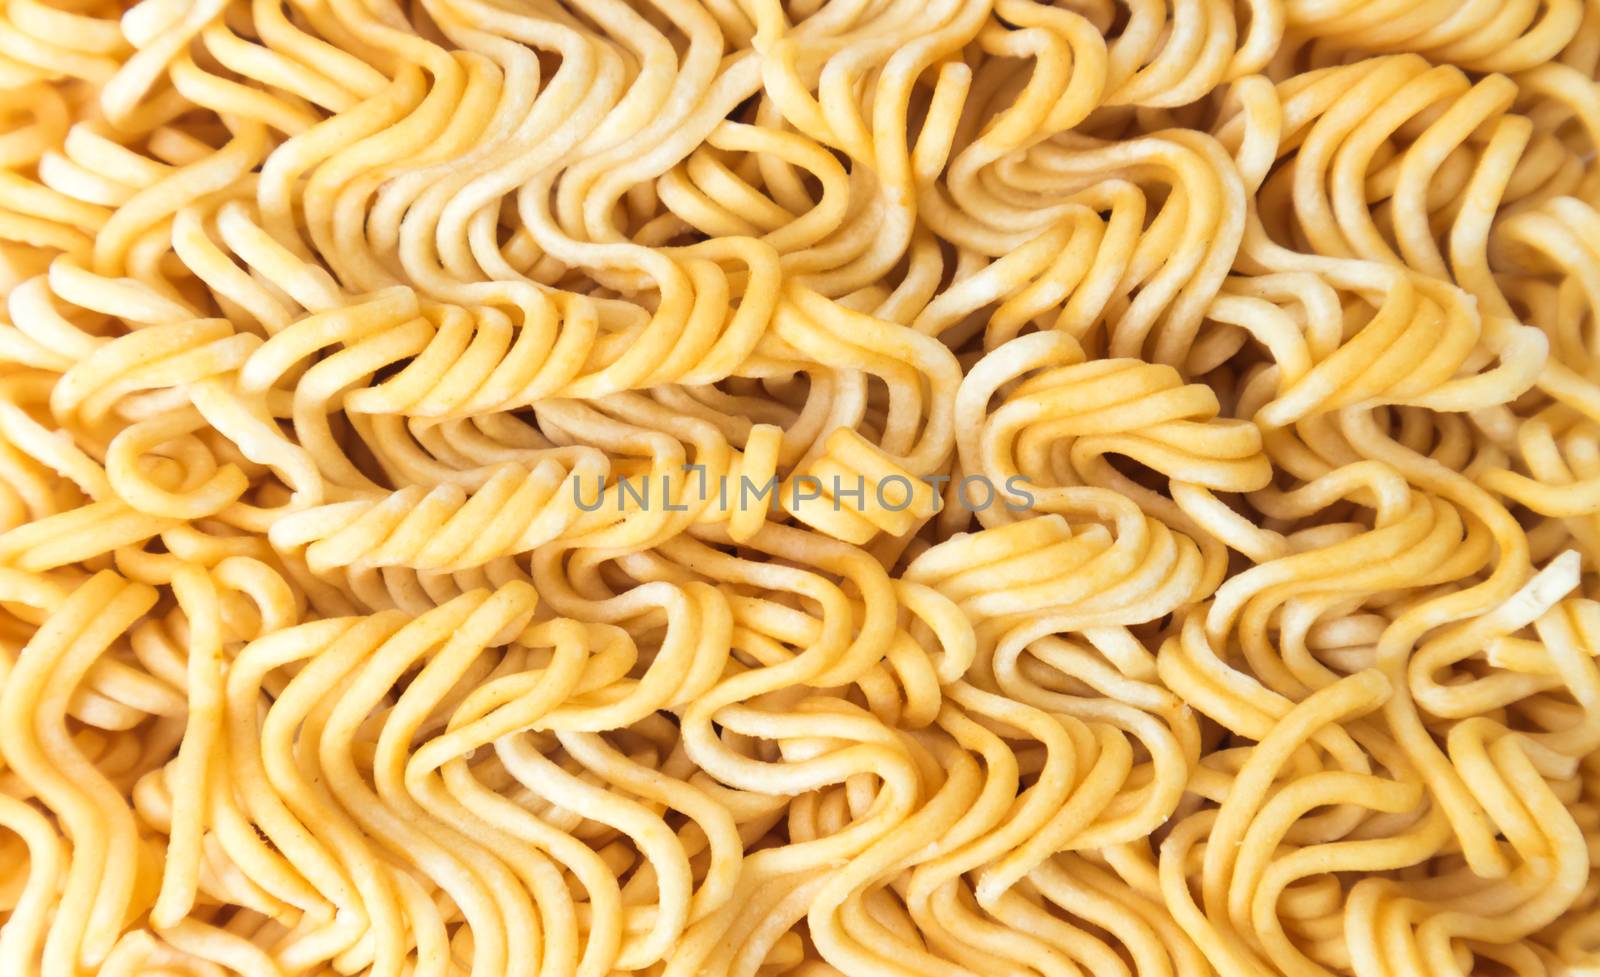 Instant noodles texture background by pt.pongsak@gmail.com